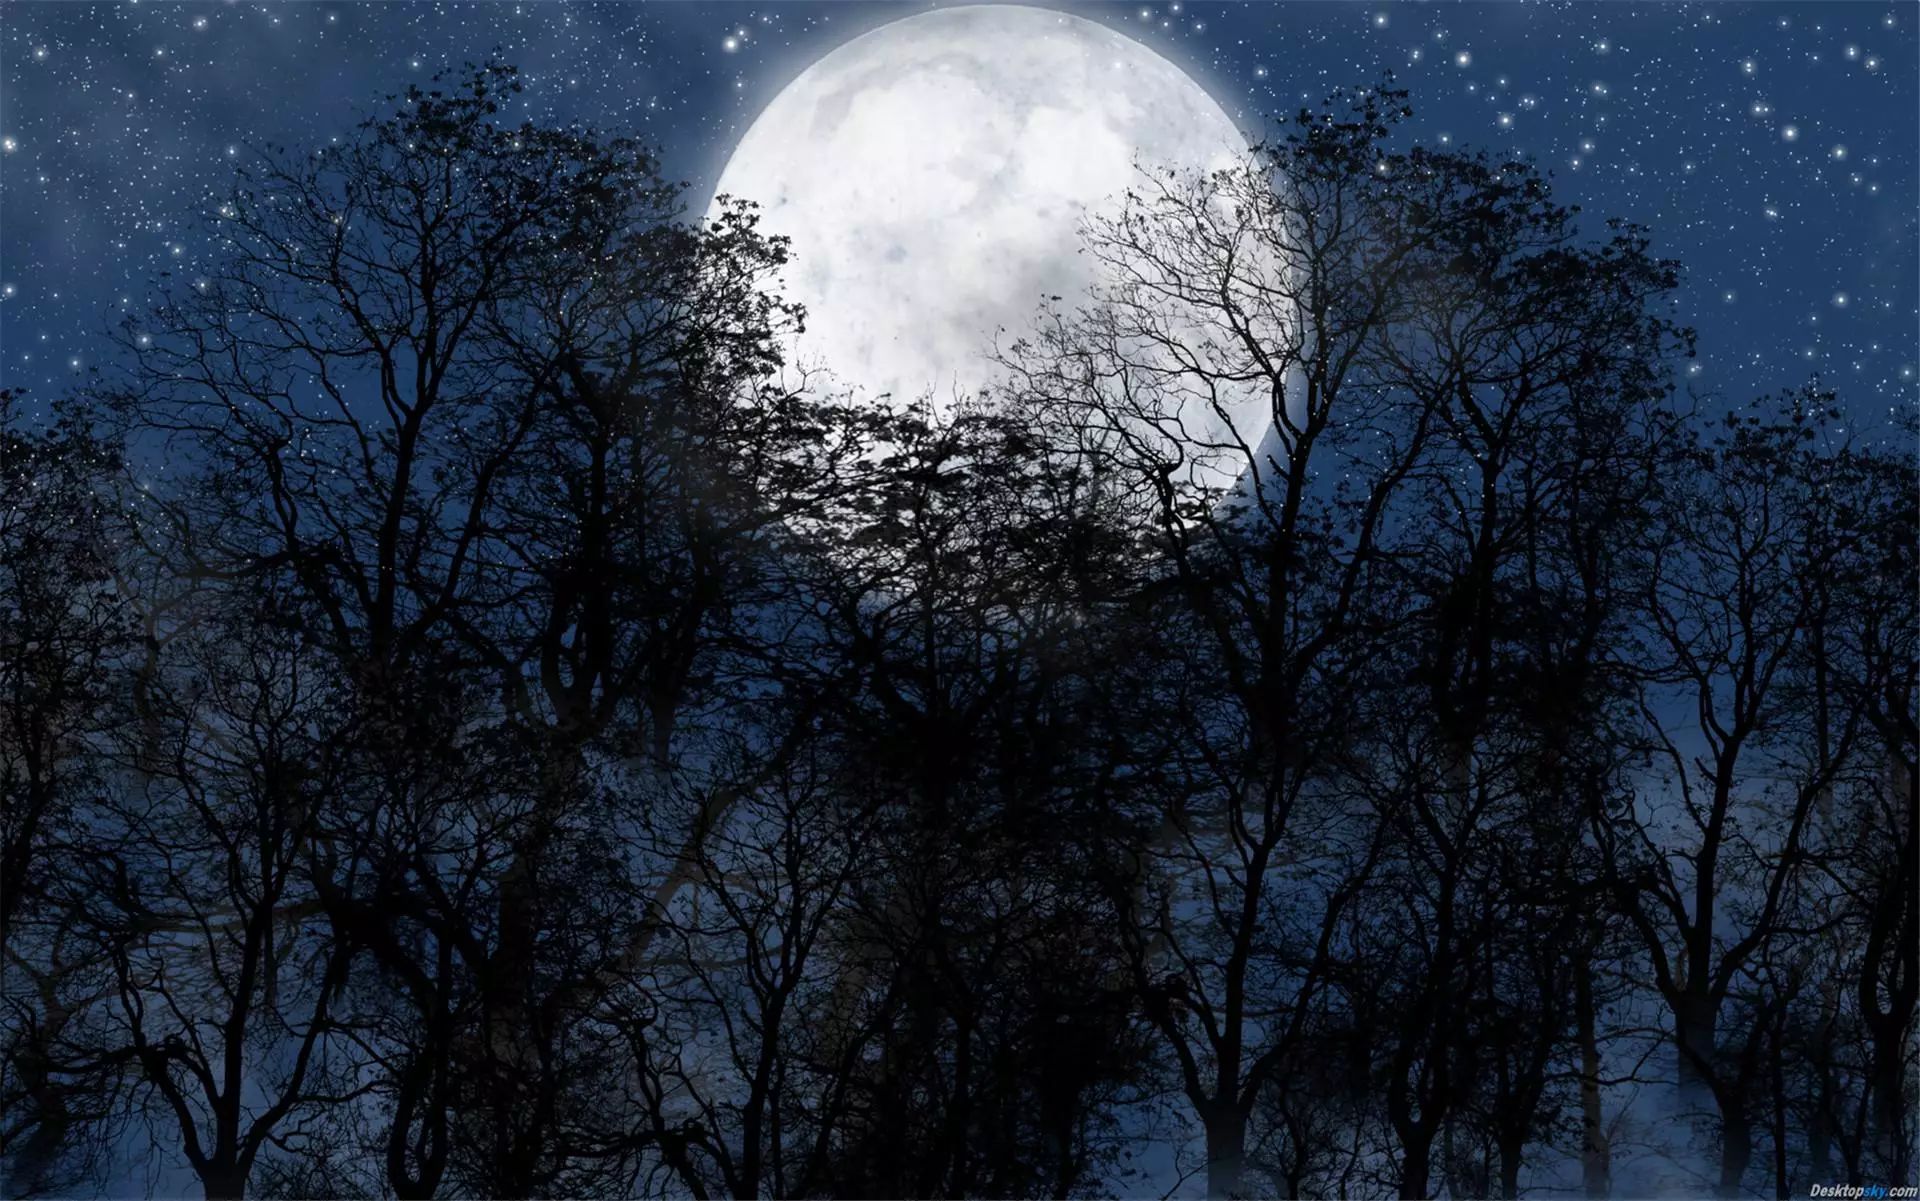 这其实是一个简单的事实,我对比了小时候在番石榴树上看到的月亮,大